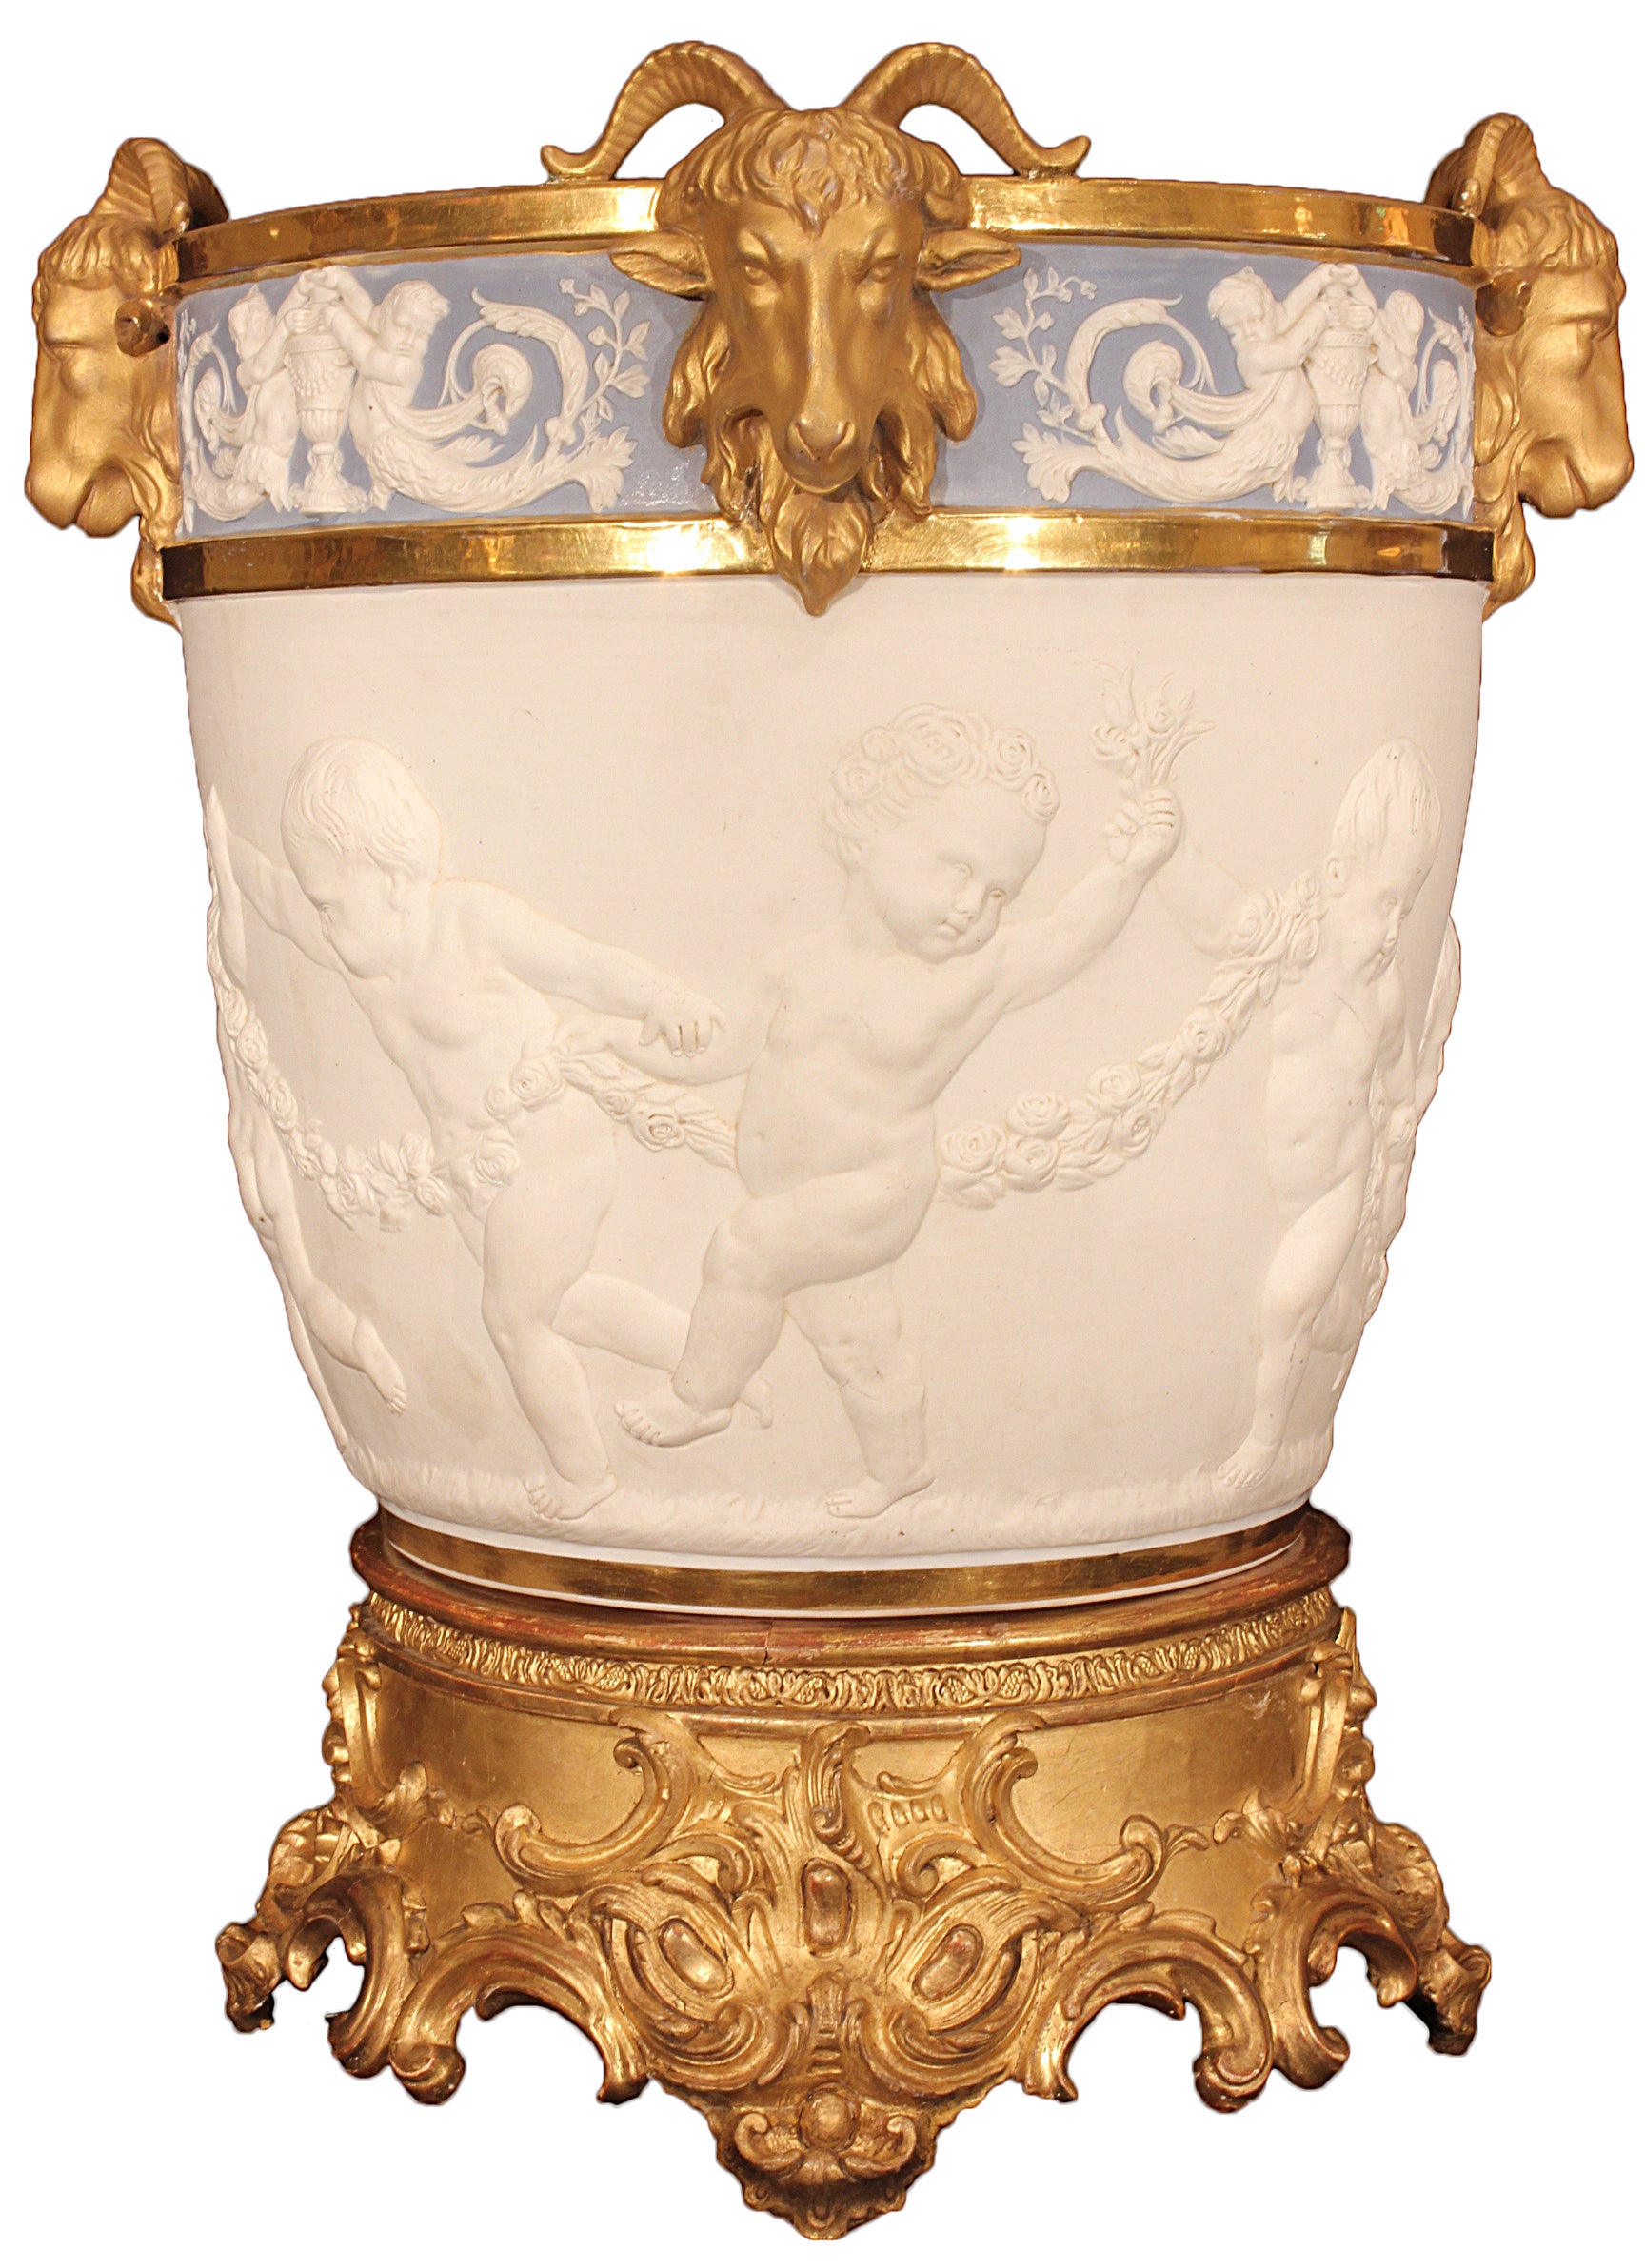 French 19th century milk pail, à la Marie Antoinette, signed Sèvres